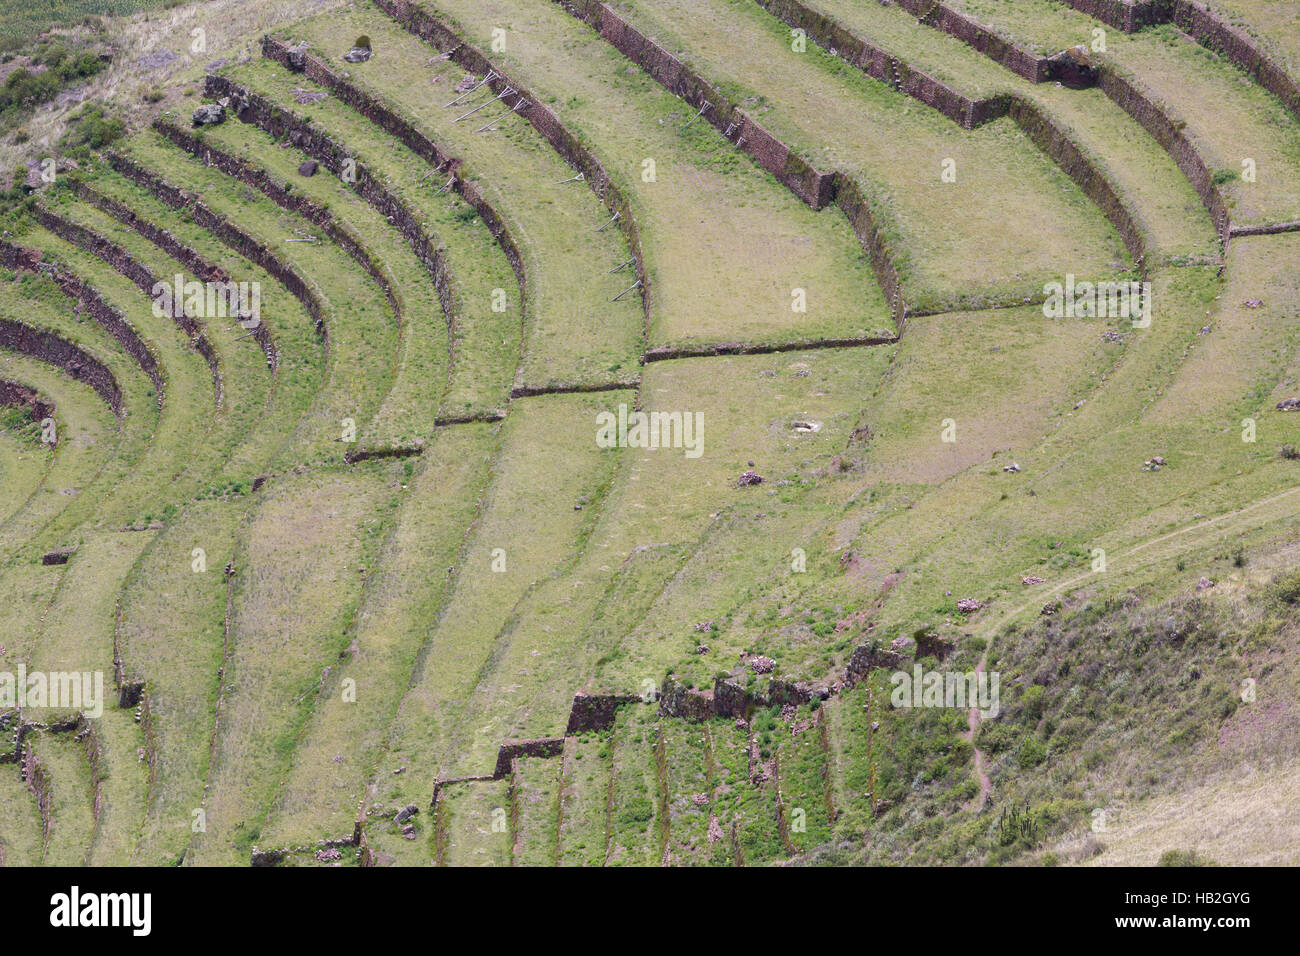 Tour de terrasses agricoles Incas dans la Vallée Sacrée, Pérou Banque D'Images